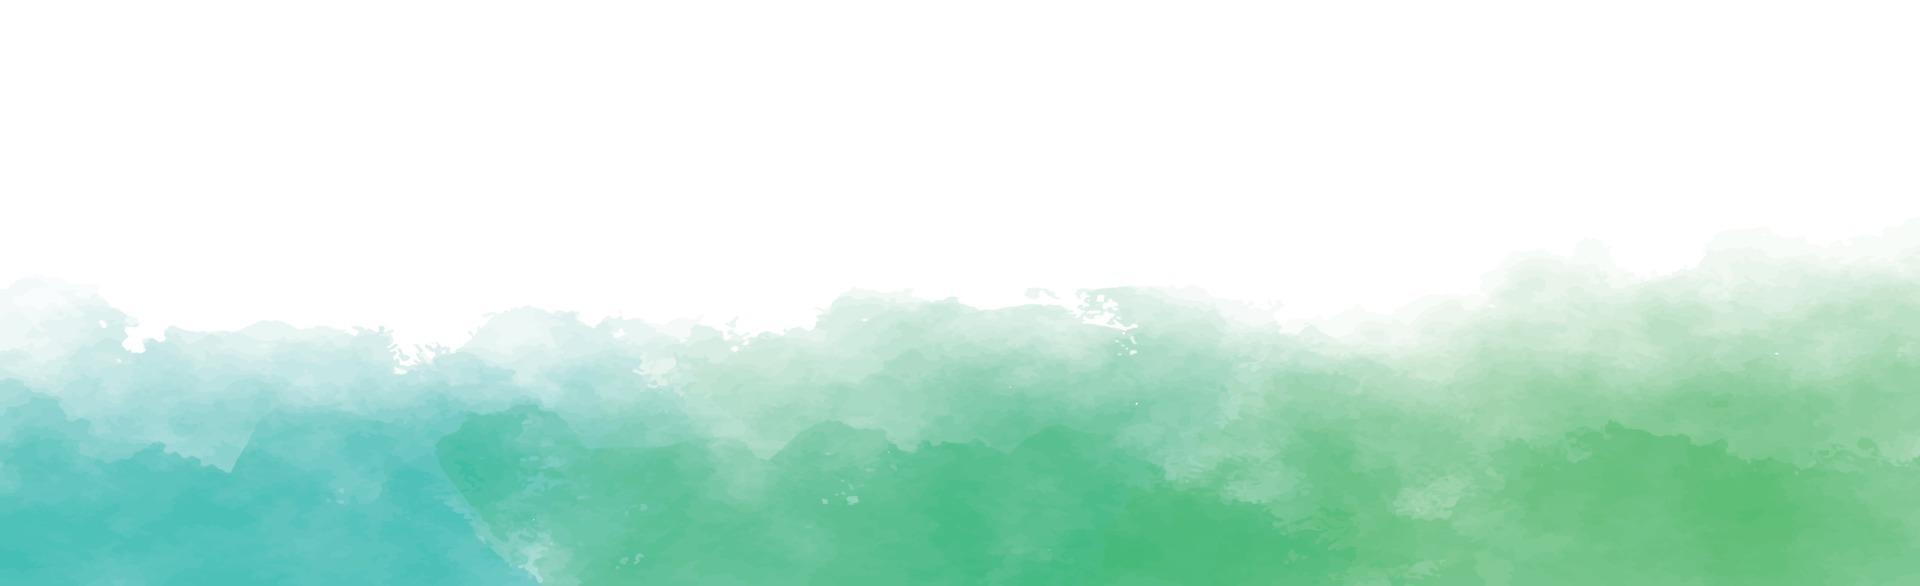 trama panoramica di acquerello verde realistico su sfondo bianco - vettore